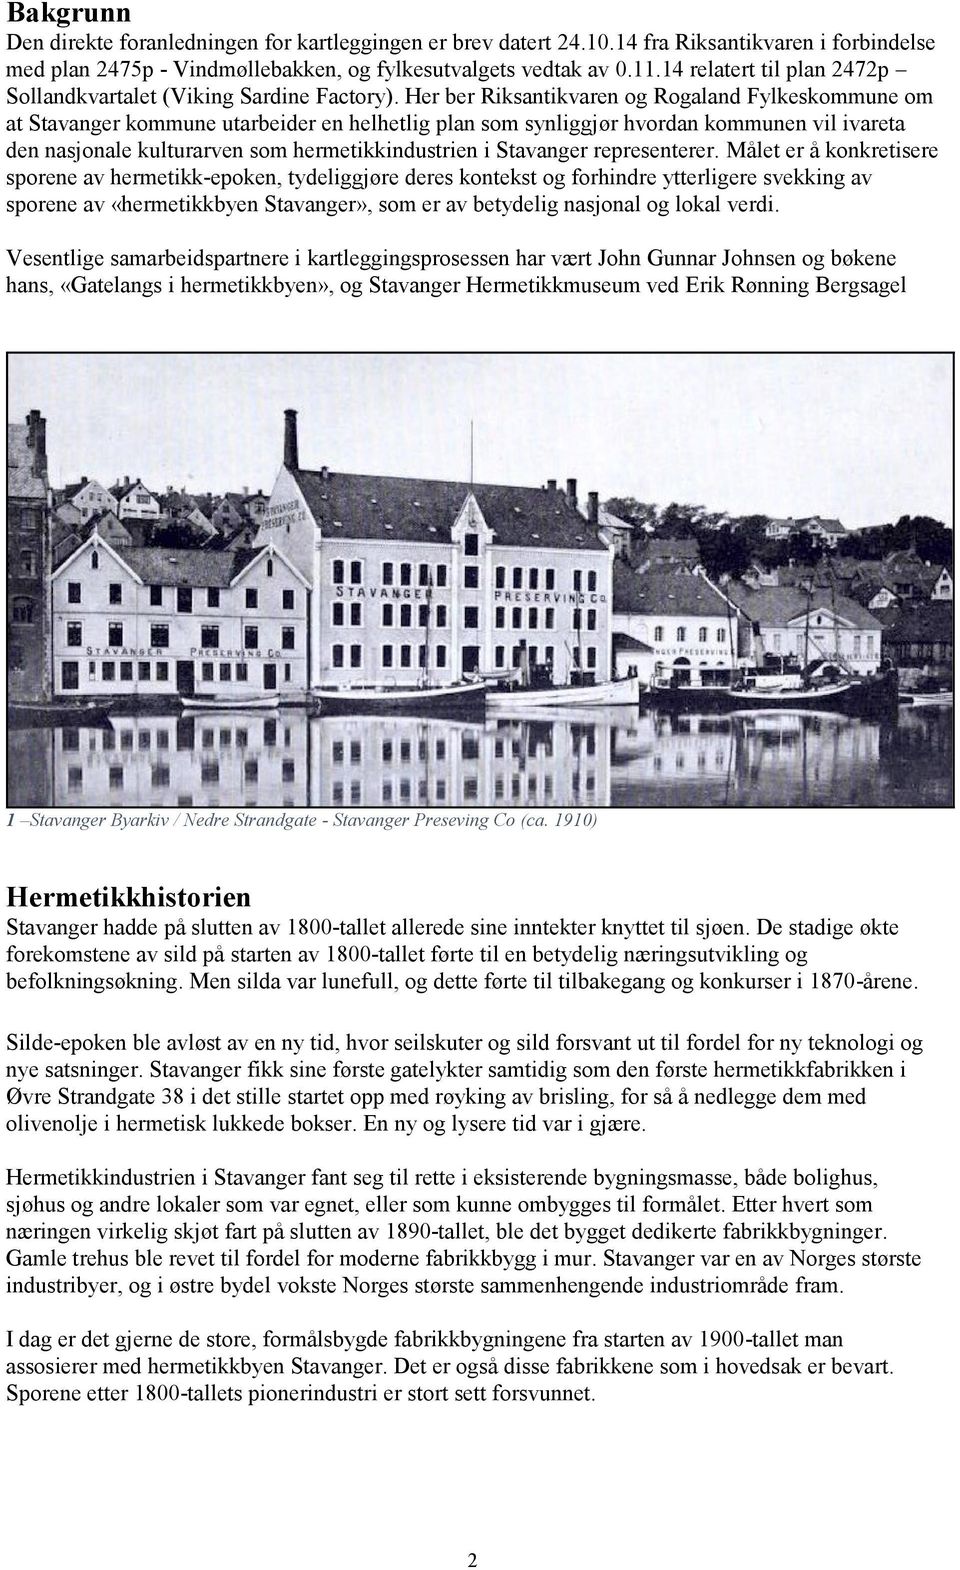 Her ber Riksantikvaren og Rogaland Fylkeskommune om at Stavanger kommune utarbeider en helhetlig plan som synliggjør hvordan kommunen vil ivareta den nasjonale kulturarven som hermetikkindustrien i